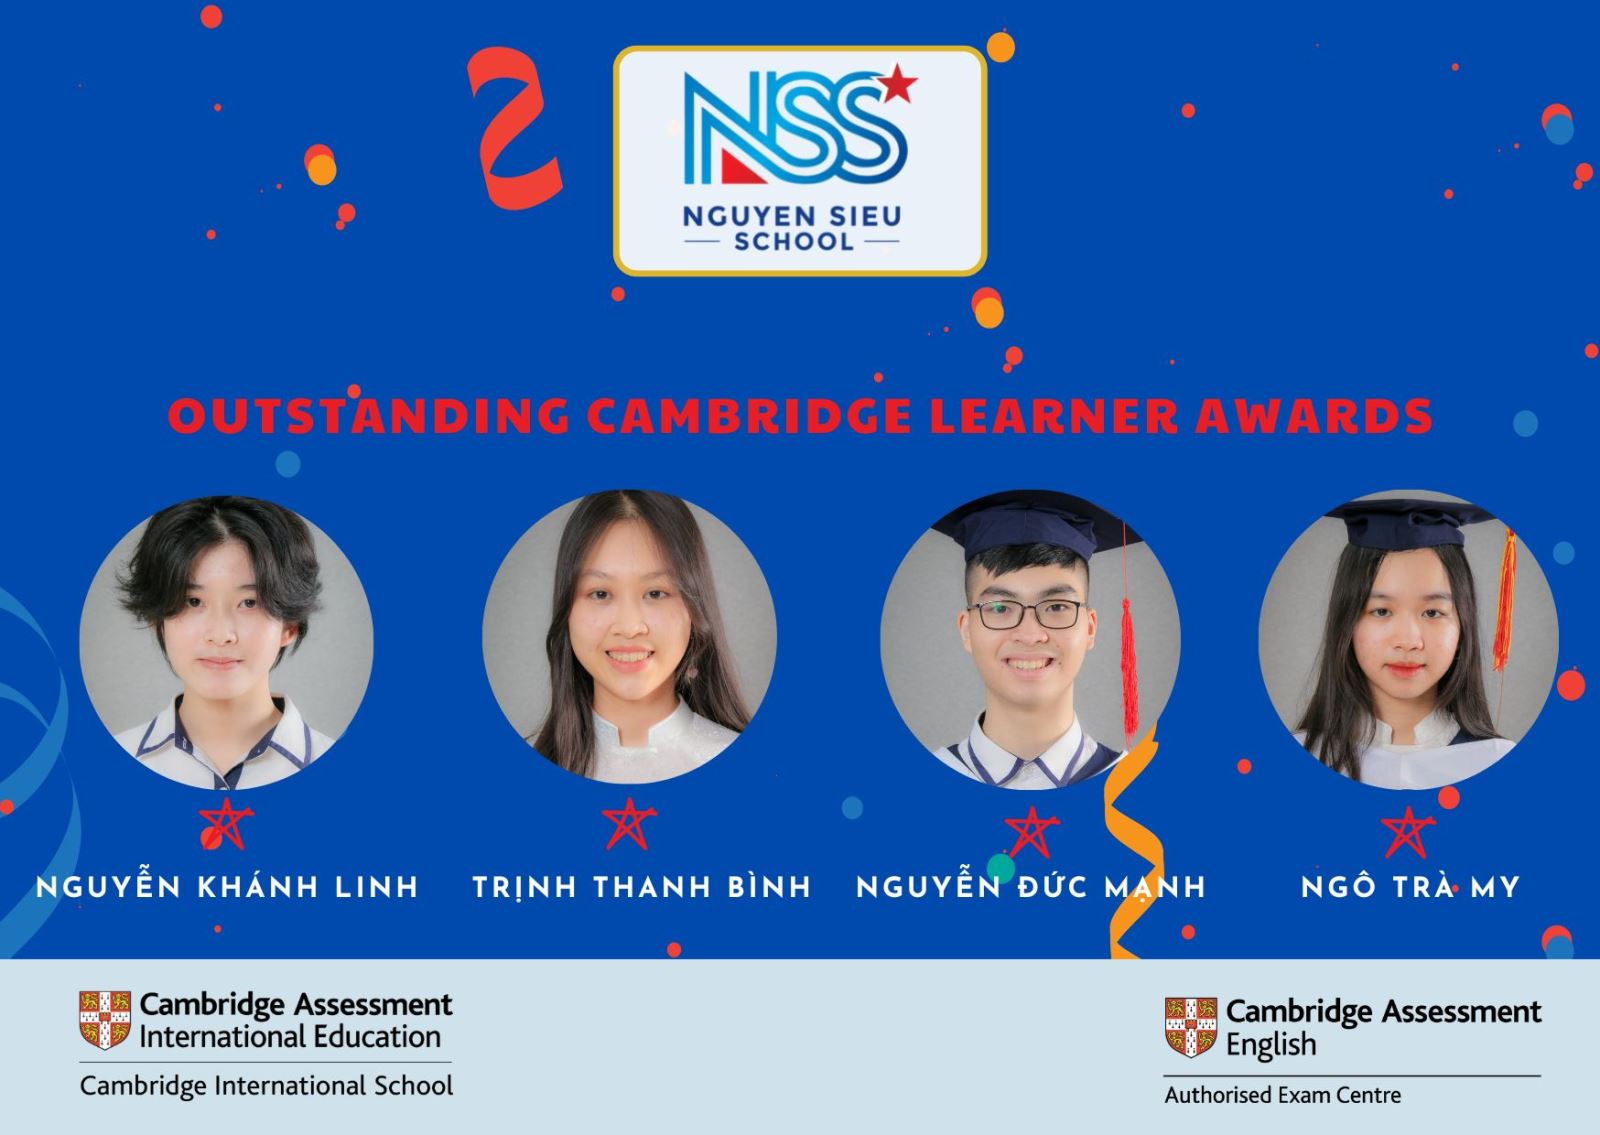 Lần đầu tiên Top 3 thế giới xướng tên học sinh Cambridge Nguyễn Siêu